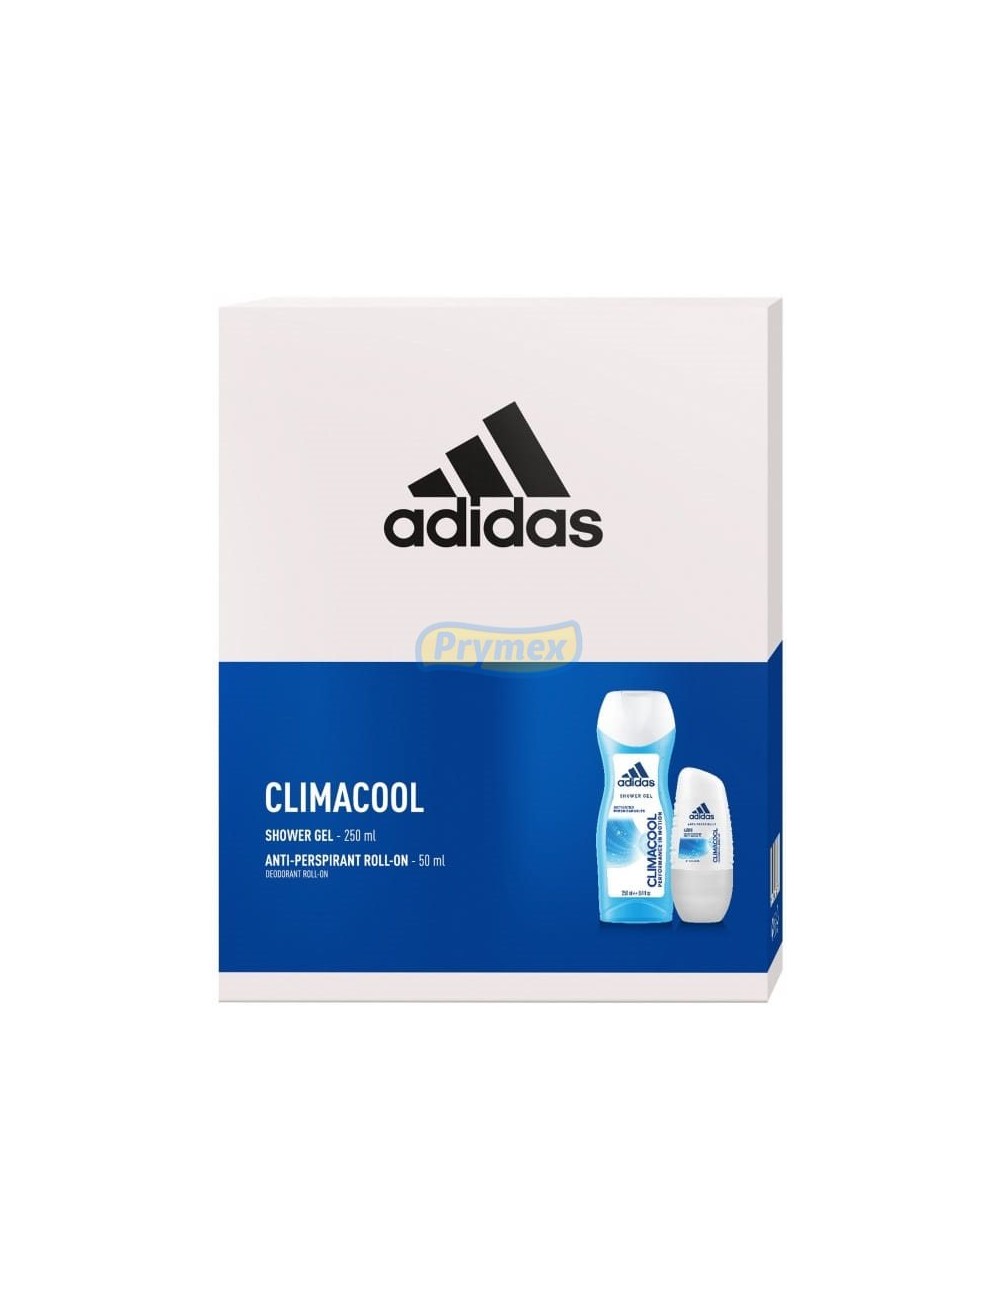 Adidas Zestaw dla Kobiet Climacool – Żel pod Prysznic 250 ml + Antyperspirant w Kulce 50 ml